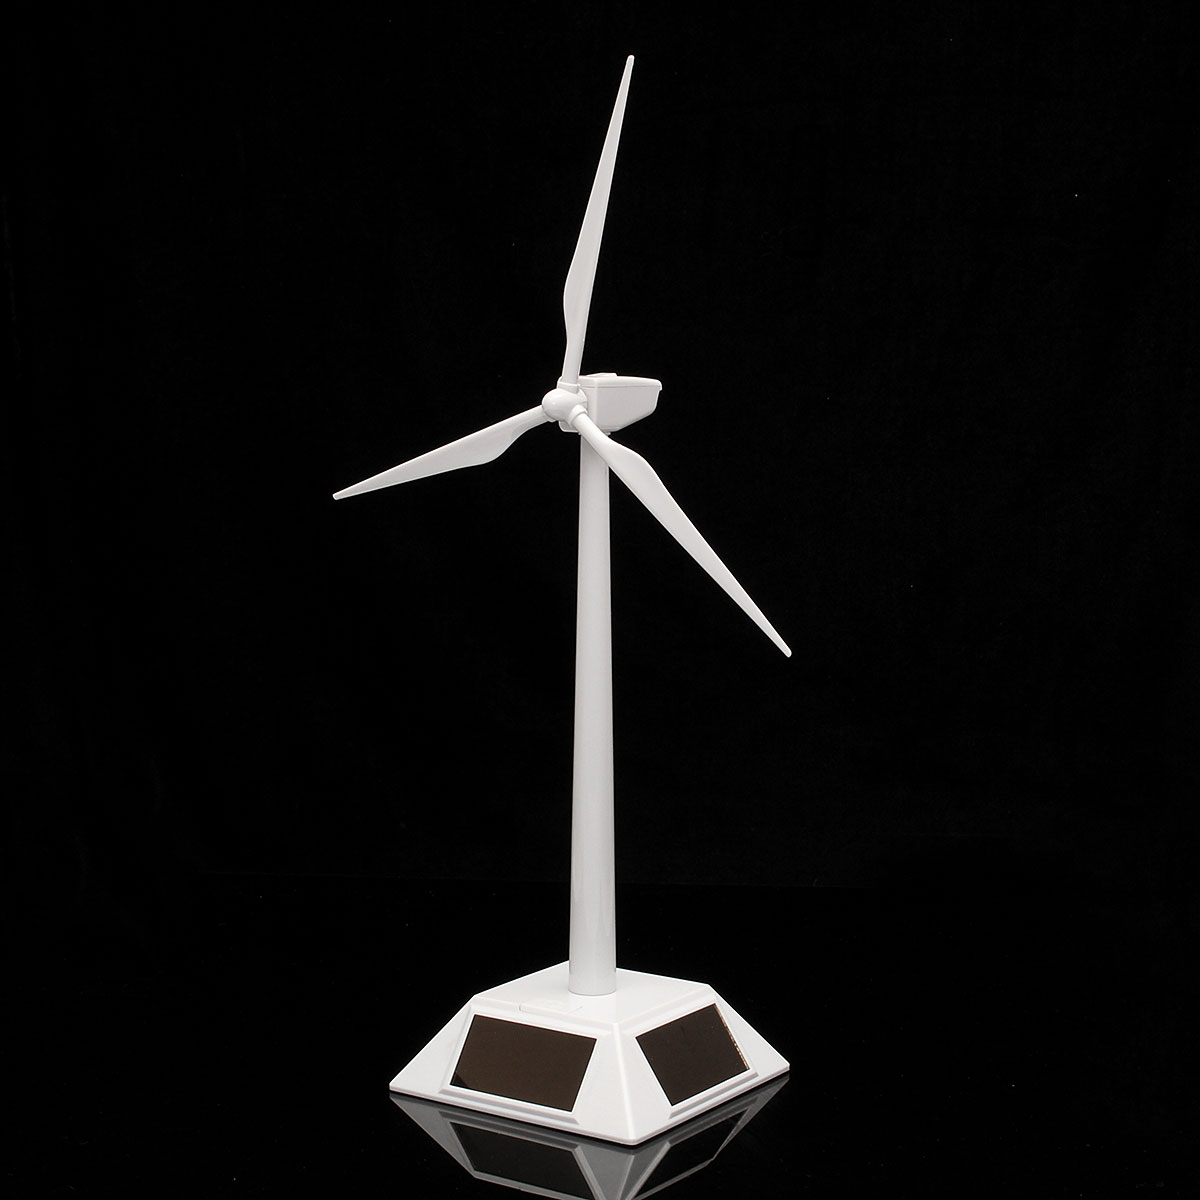 Plastic-Solar-Powered-Windmill-Wind-Mill-Turbine-Teaching-Tool--Desktop-Display-Tray-Holder-1059506-1